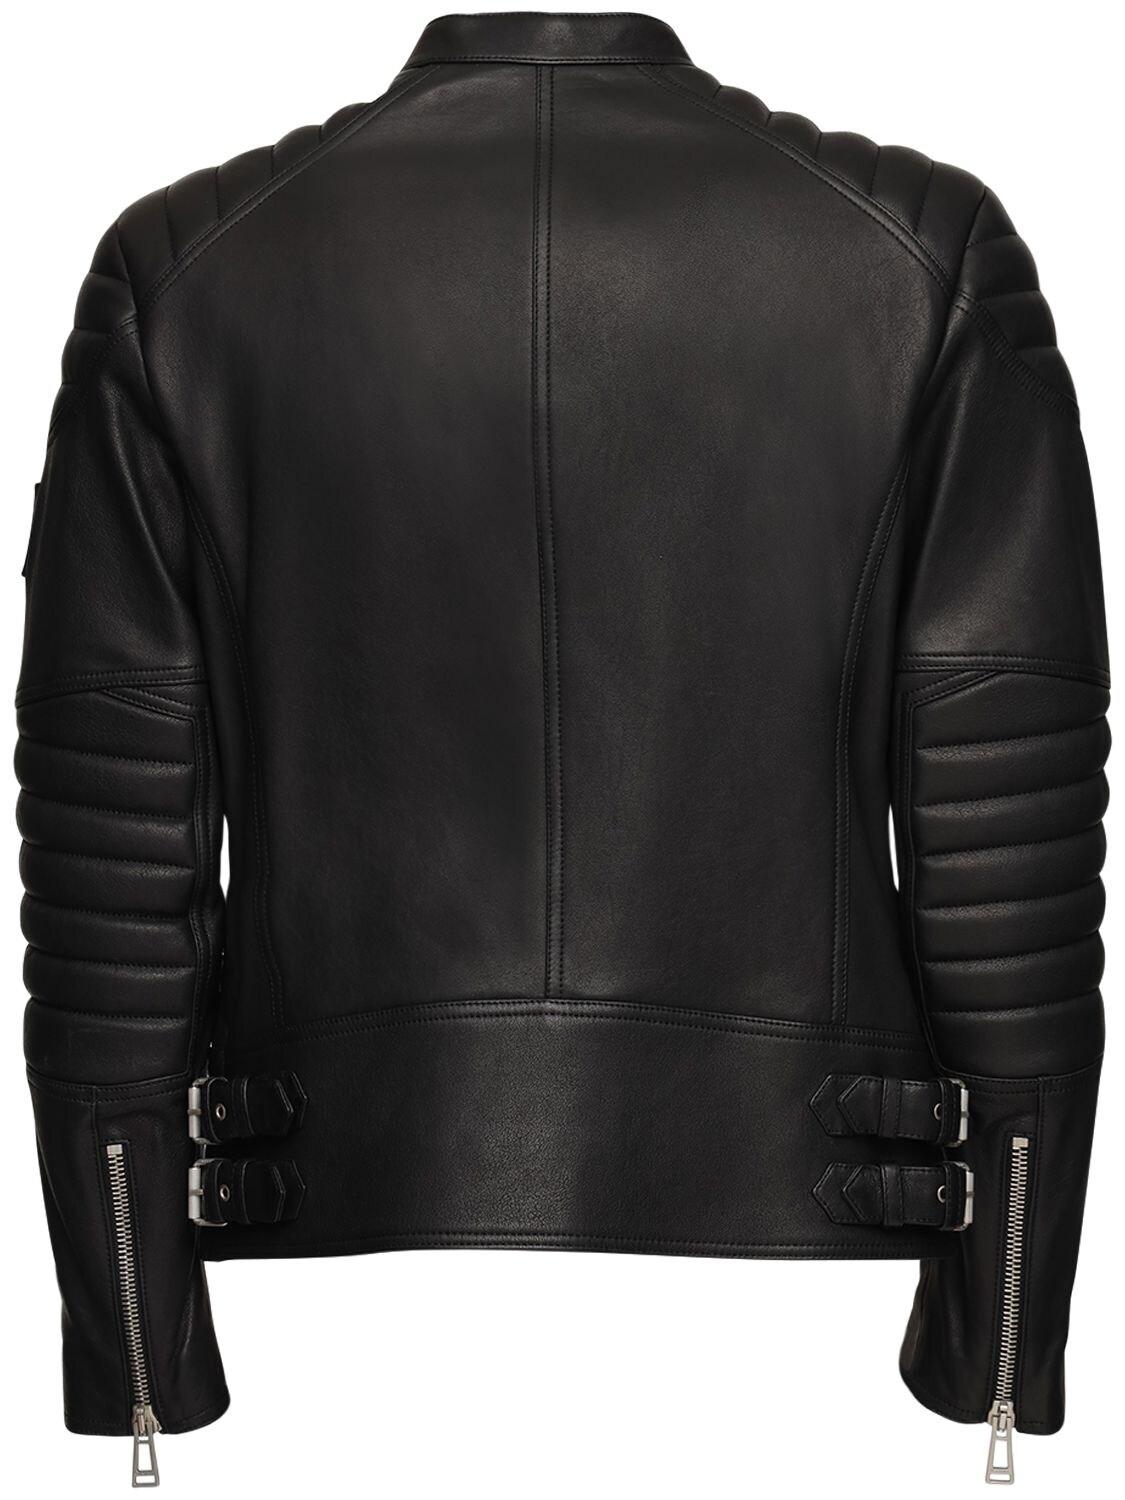 Belstaff Sidney Polished Leather Jacket in Black for Men - Lyst